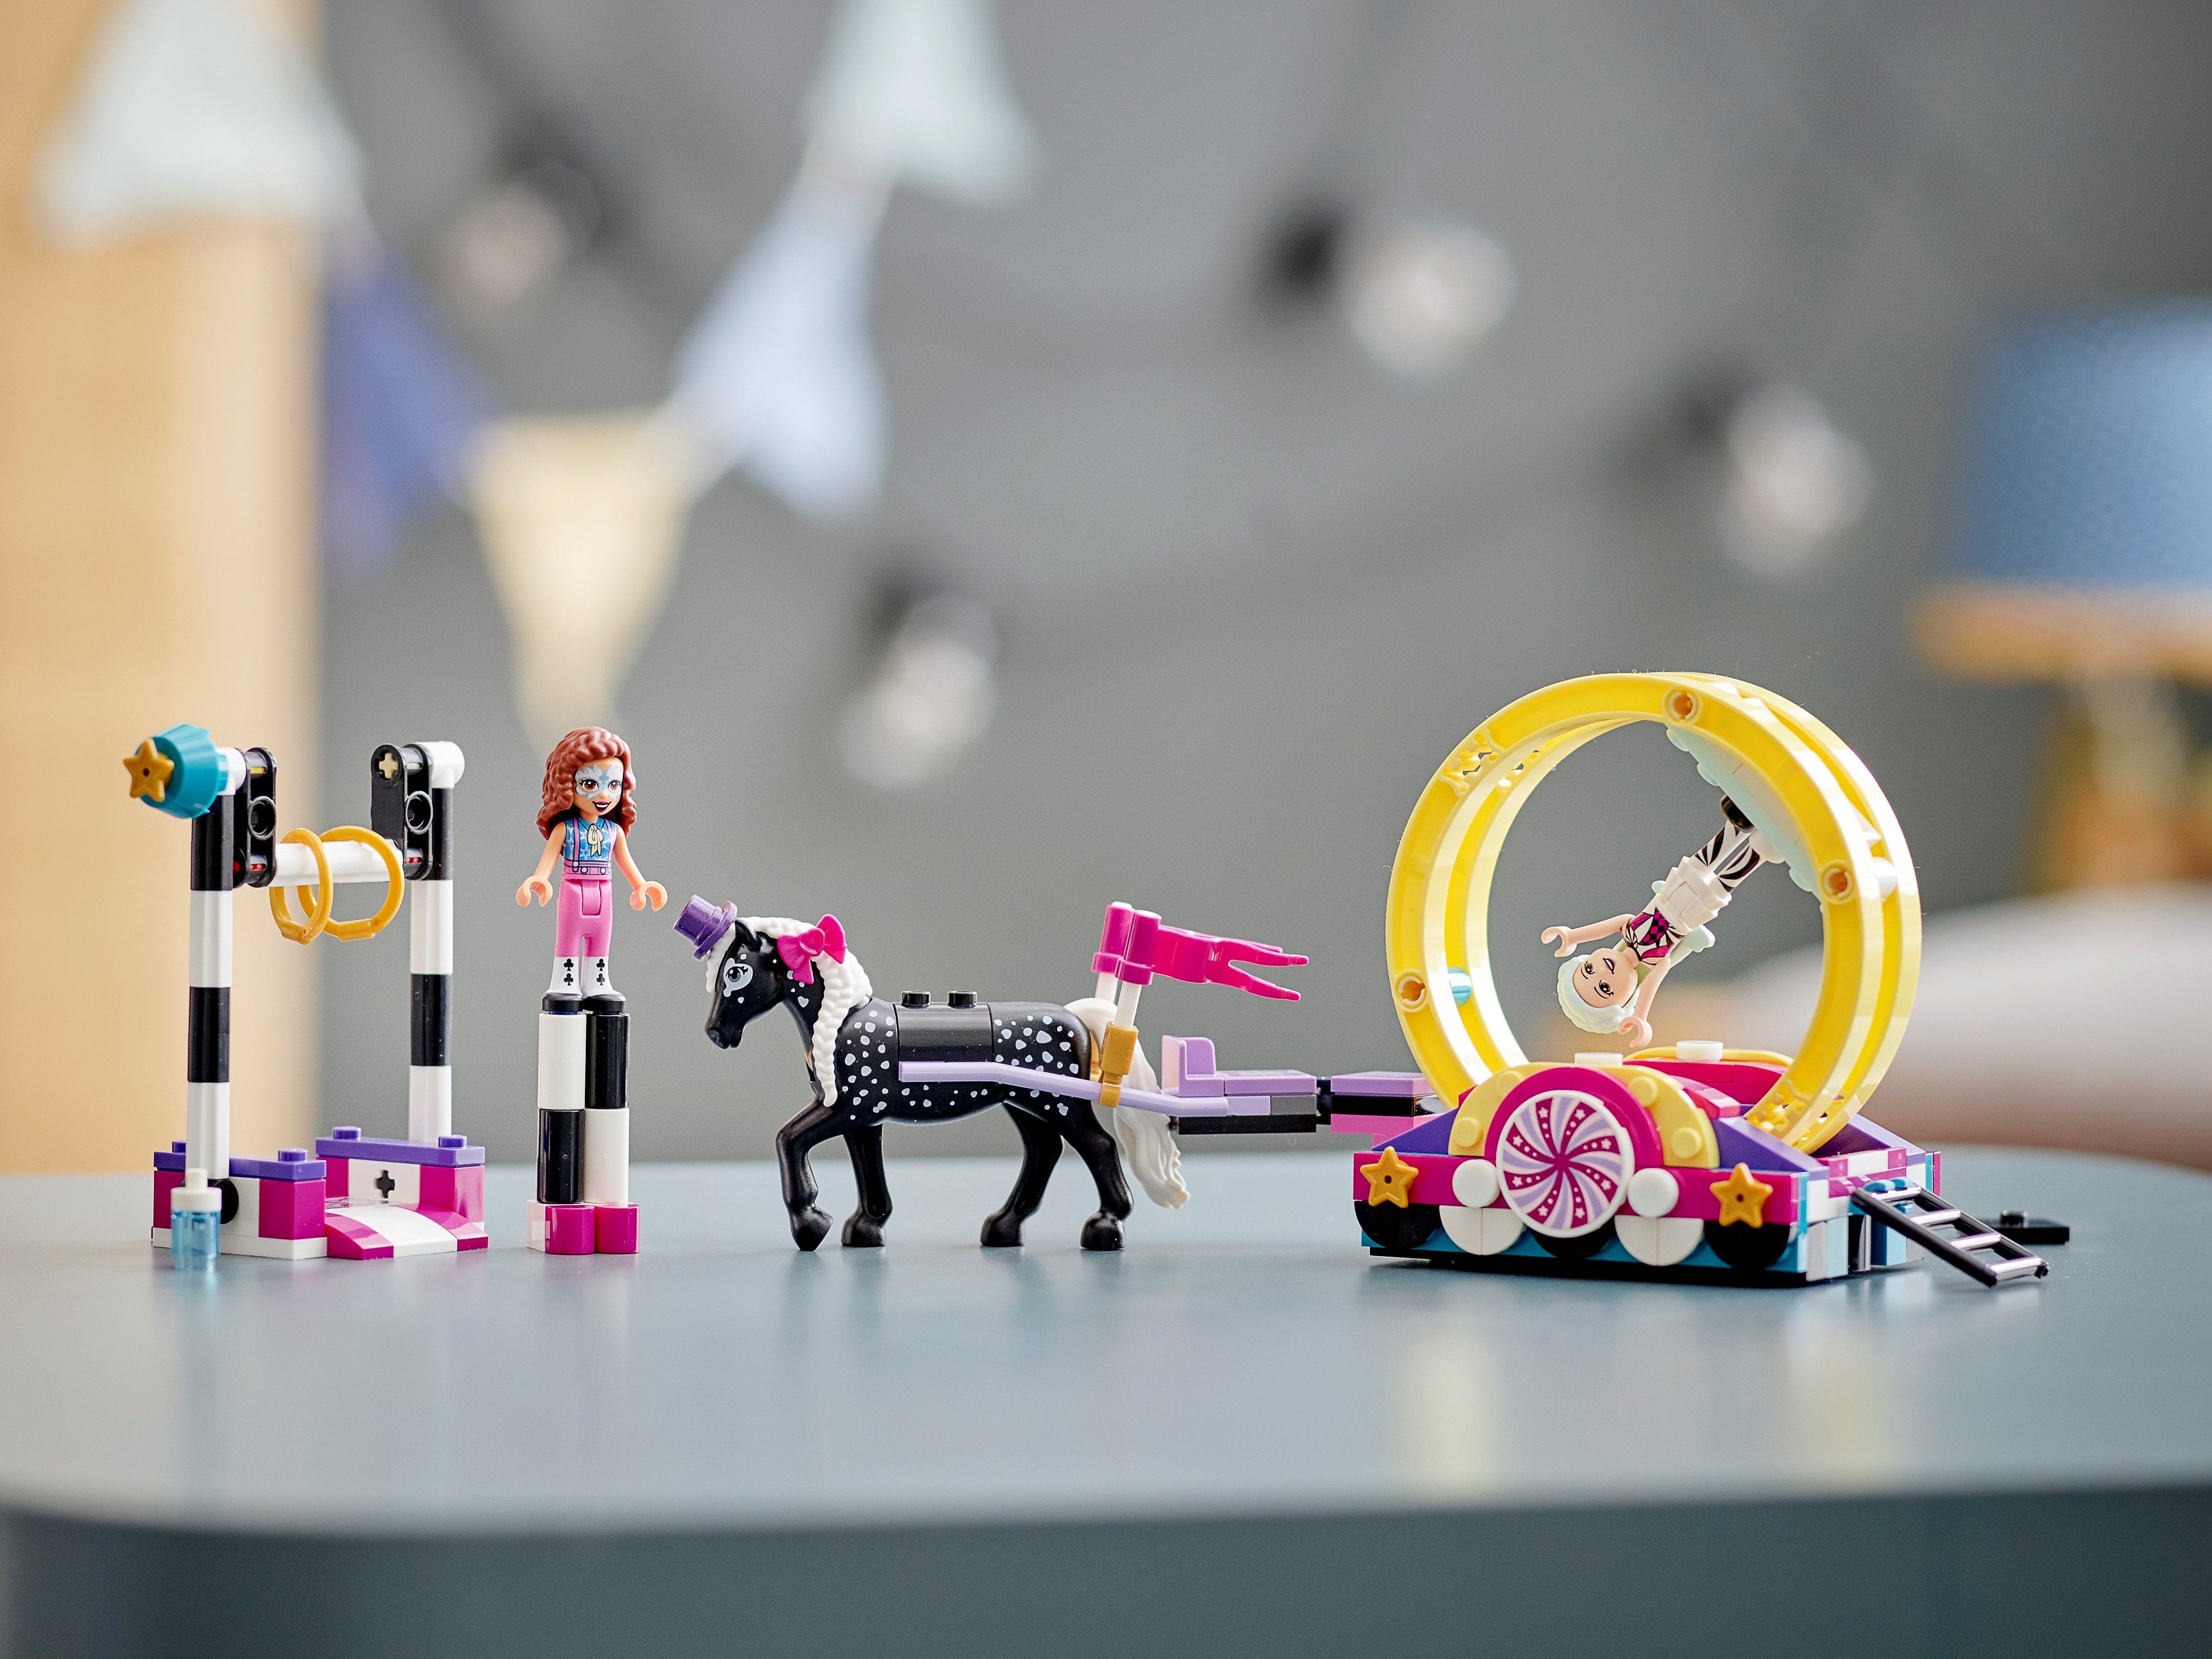 Конструктор LEGO Friends «Волшебная акробатика» 41686 / 223 детали